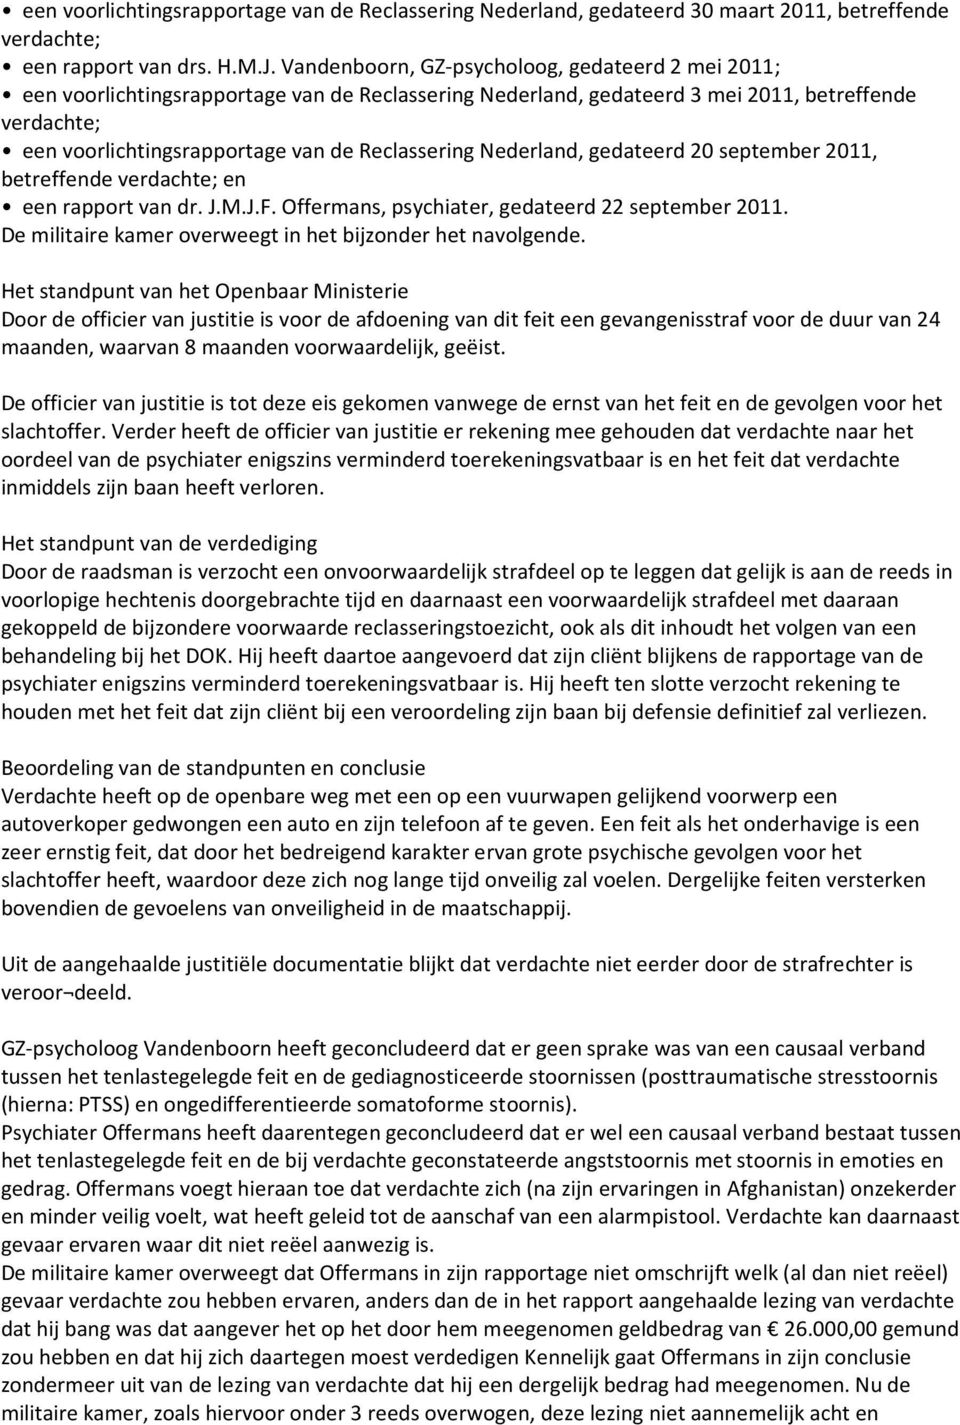 Reclassering Nederland, gedateerd 20 september 2011, betreffende verdachte; en een rapport van dr. J.M.J.F. Offermans, psychiater, gedateerd 22 september 2011.